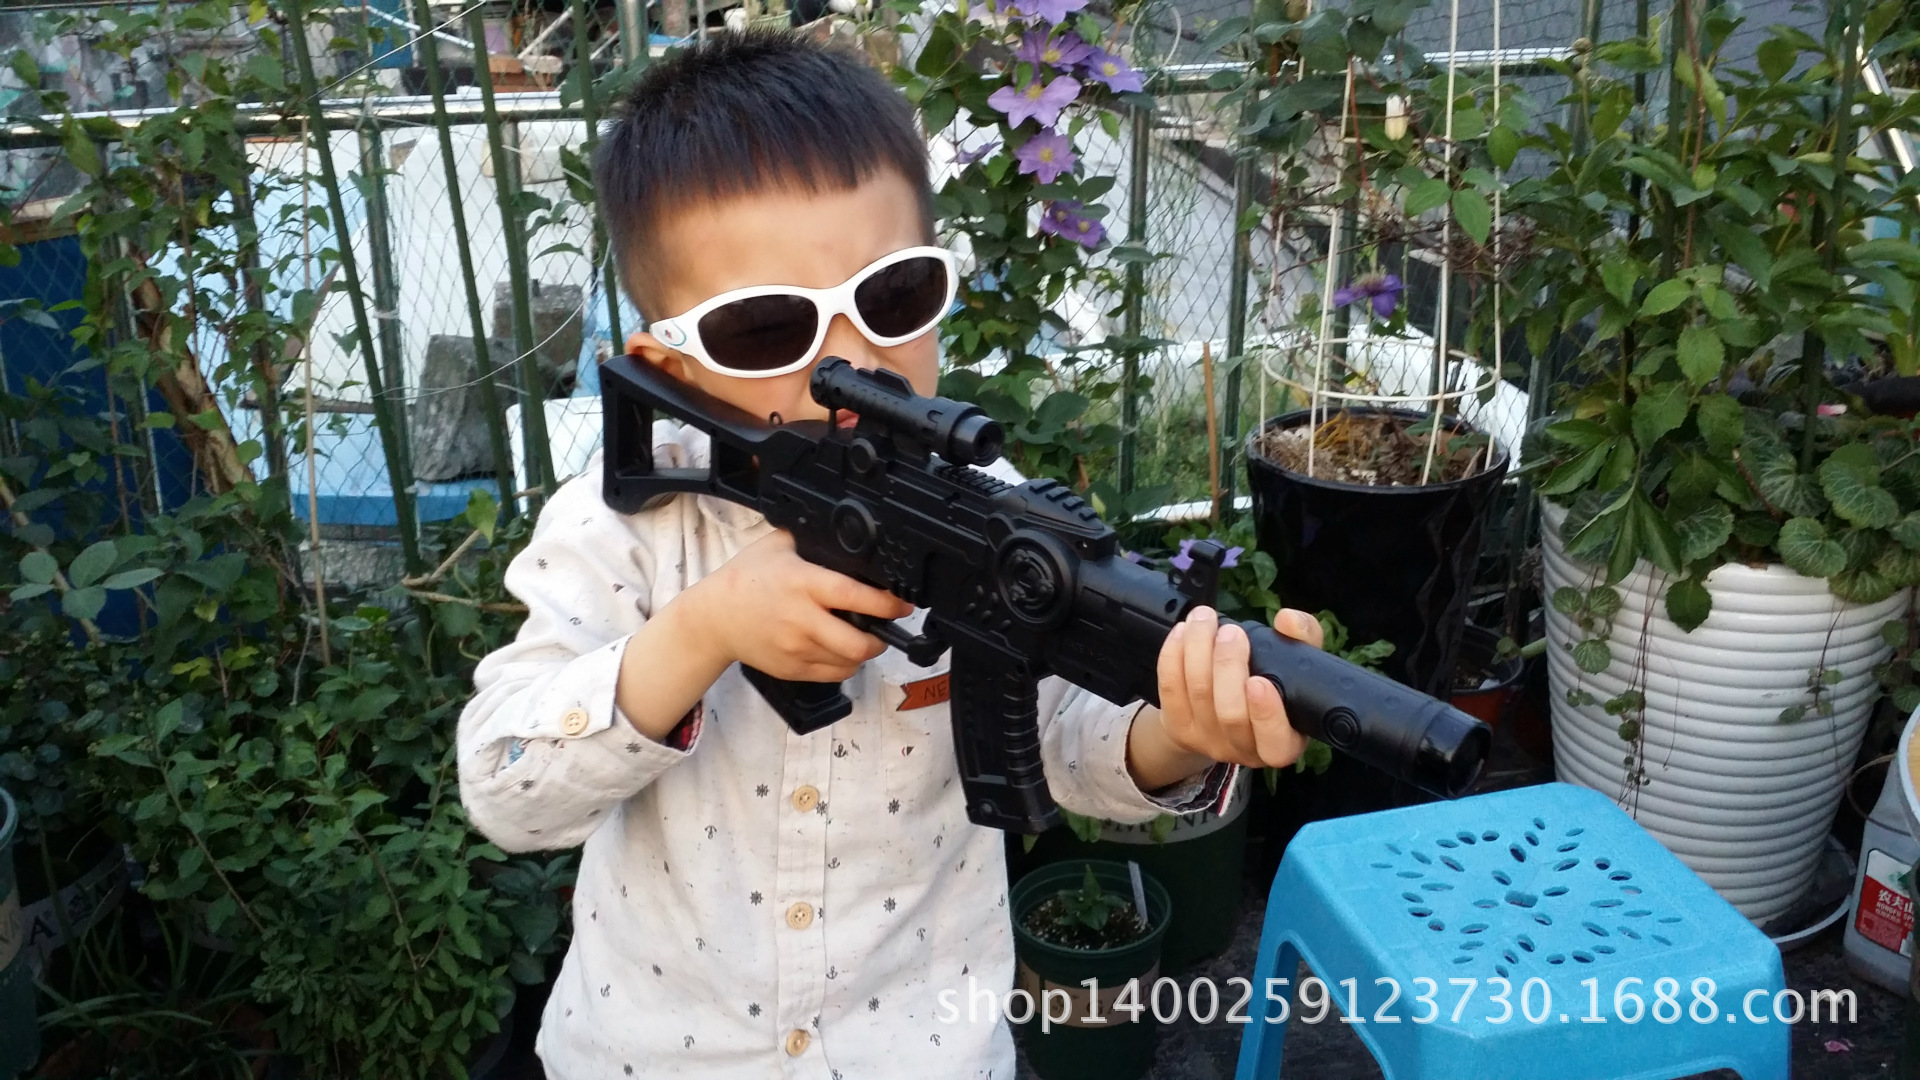 射击游戏枪 男孩最爱玩具 2014儿童最火爆玩具 厂家直销